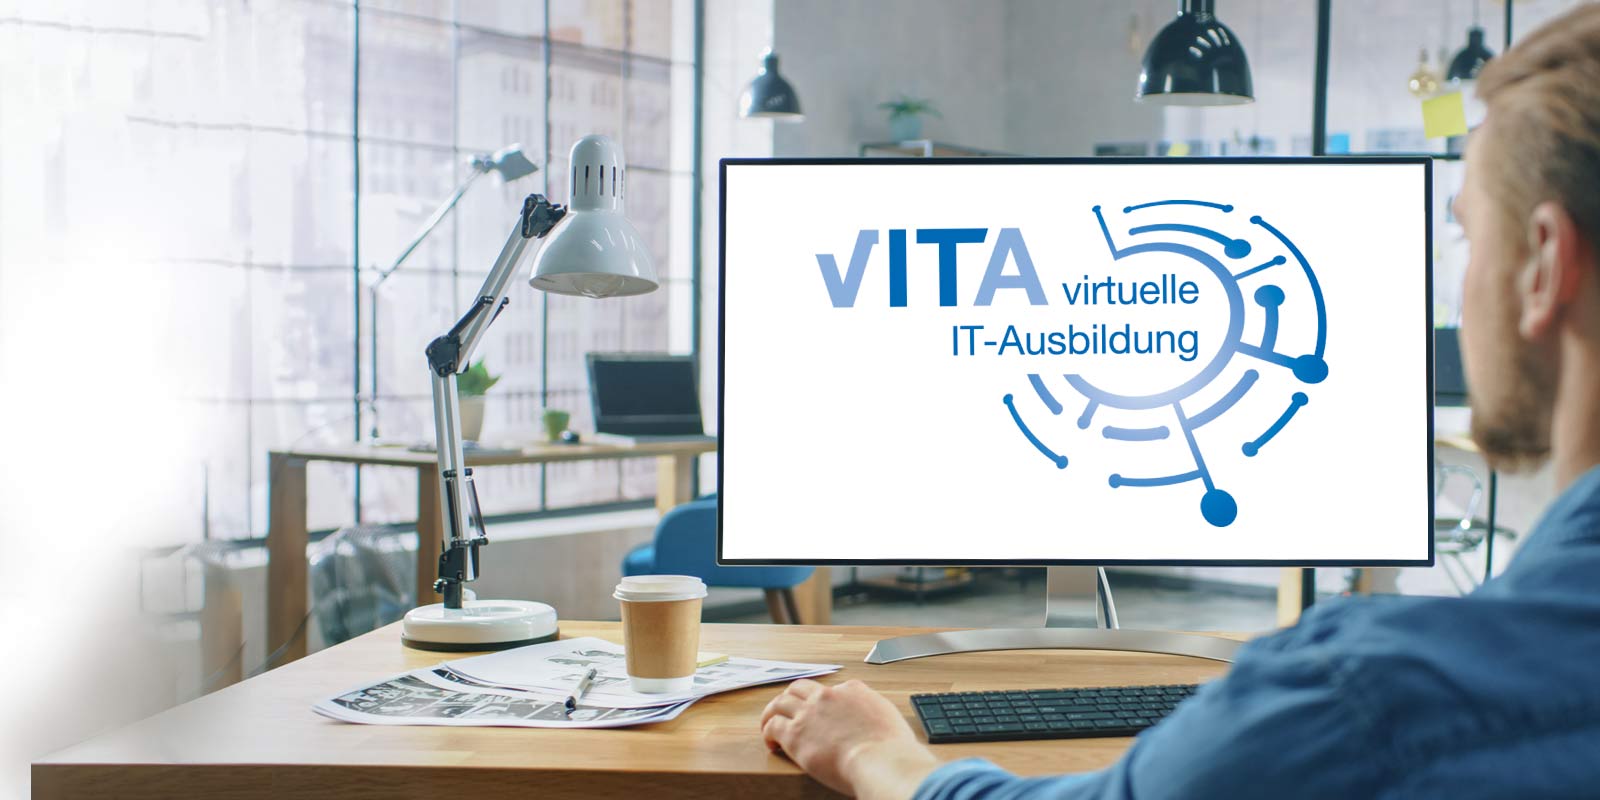 vITA virtuelle IT-Ausbildung